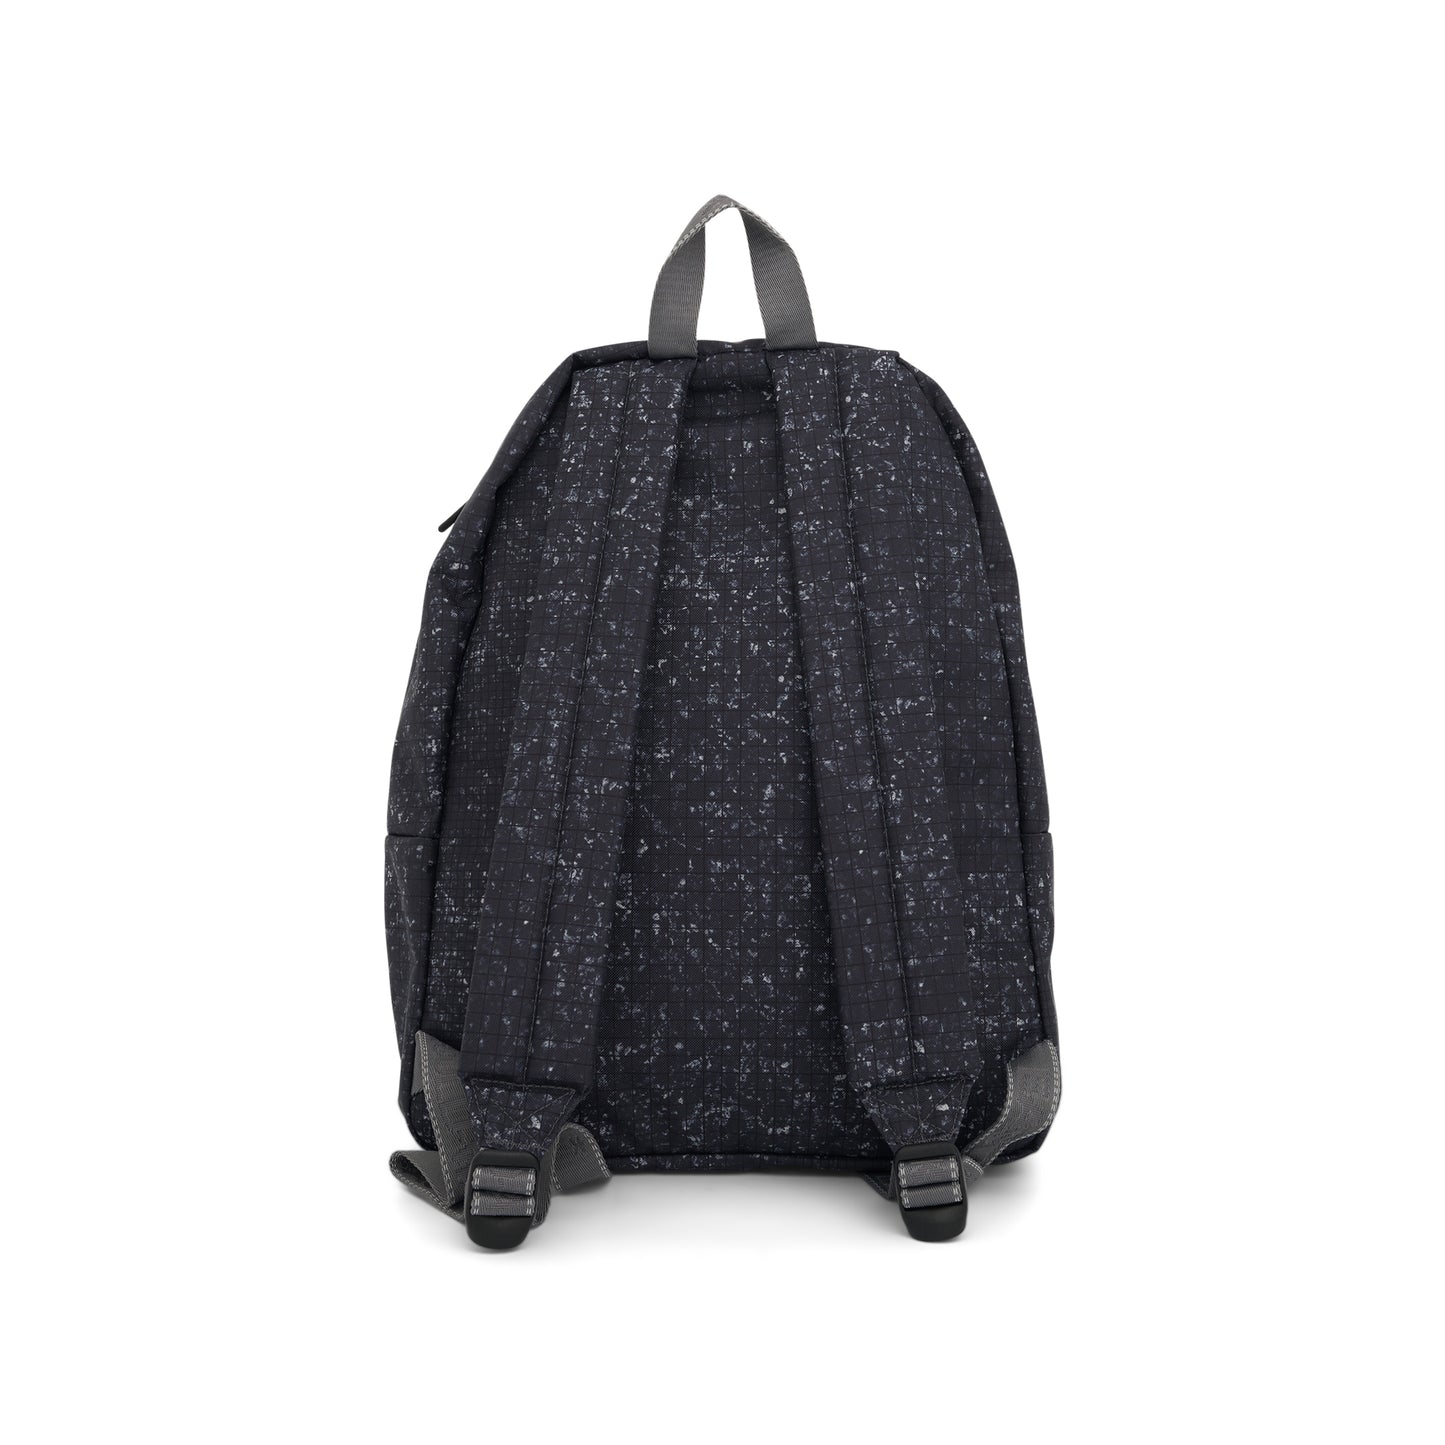 Eastpak Large Backpack in Black